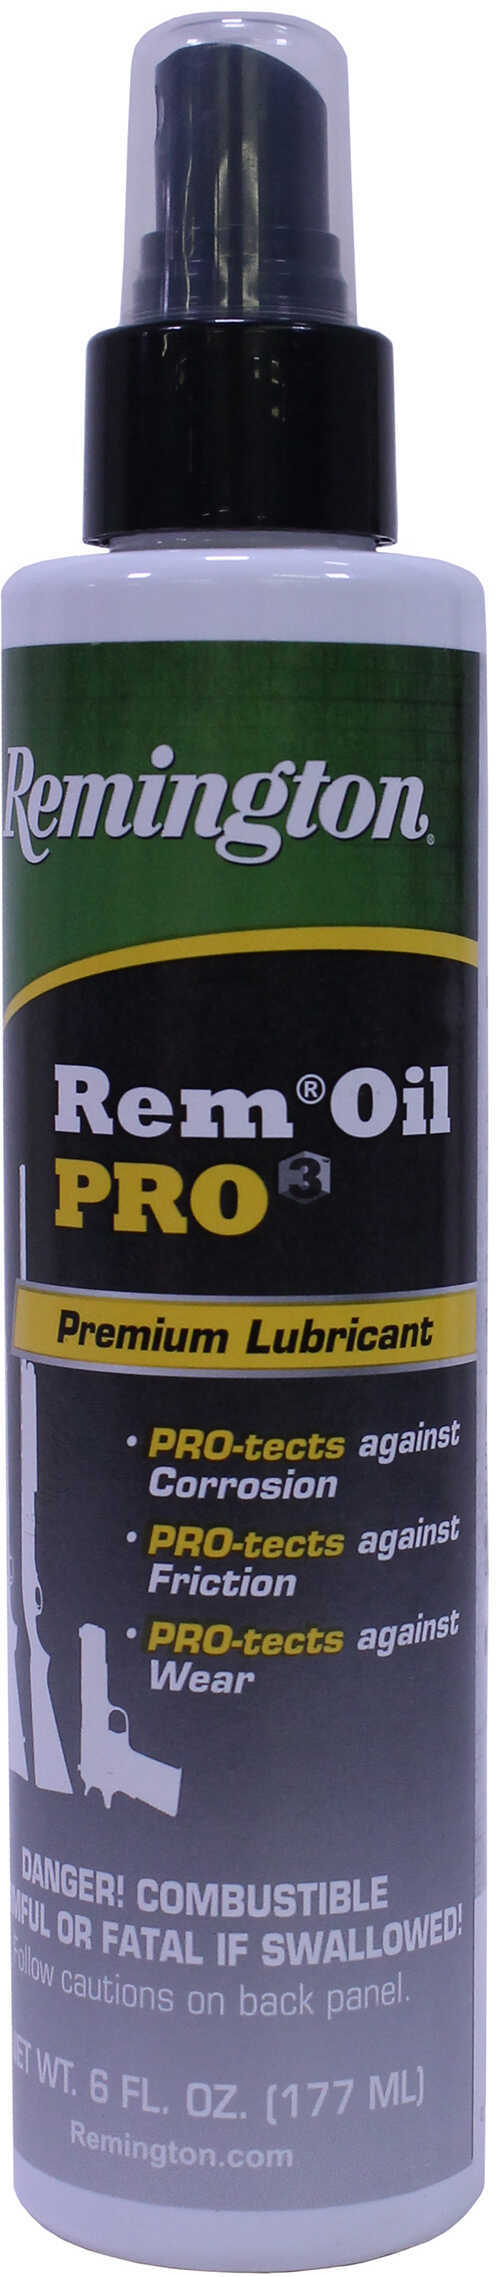 Rem Oil Pro3 6Oz Pump